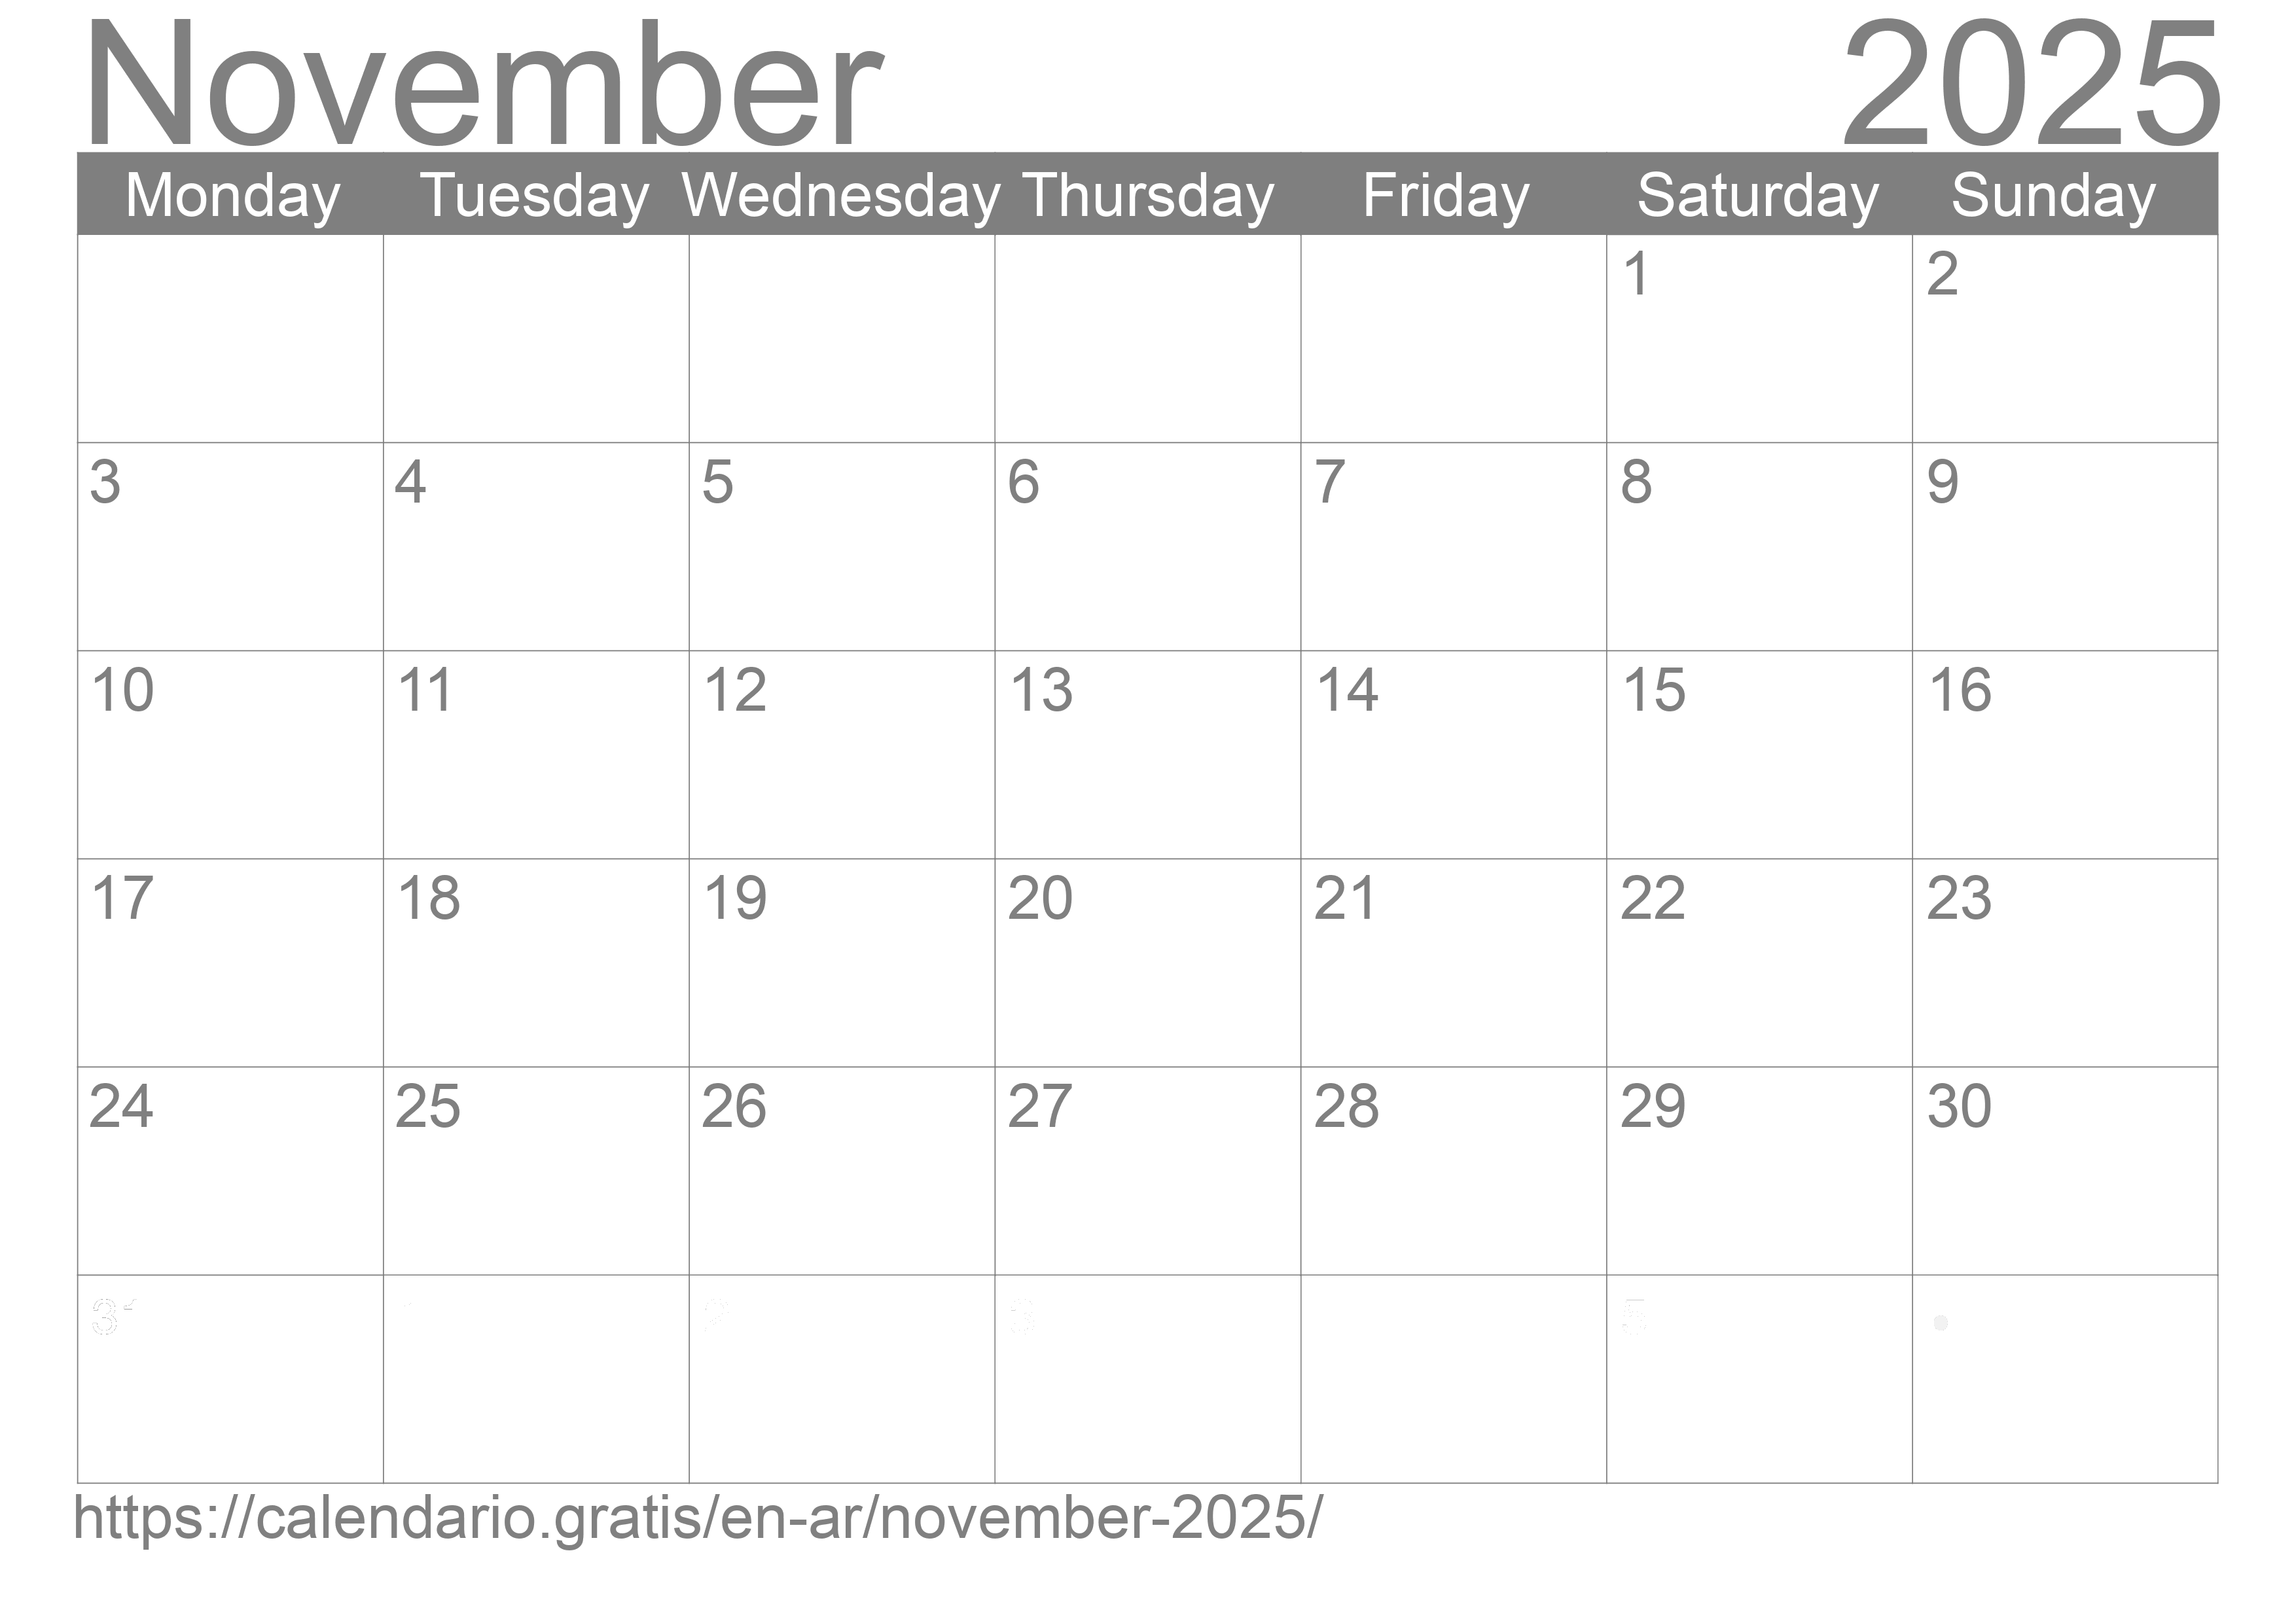 Calendar November 2025 from Argentina in English ☑️ Calendario.Gratis